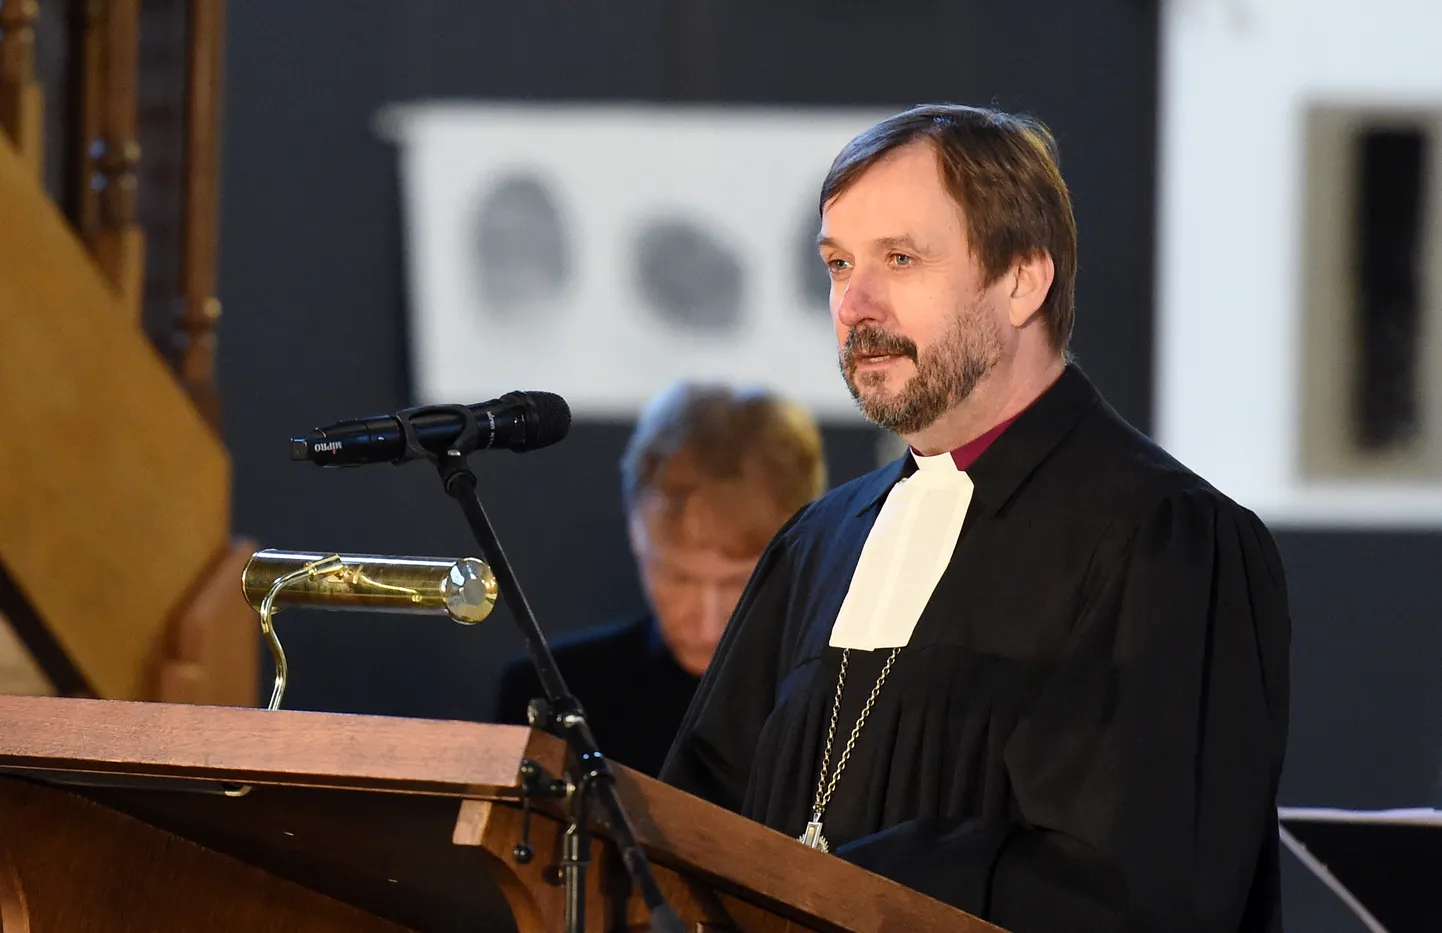 Latvijas Evaņģēliski luteriskās baznīcas arhibīskaps Jānis Vanags uzrunā klātesošos Reformācijas 500.gadadienas piemiņas plāksnes atklāšanas ceremonijā.